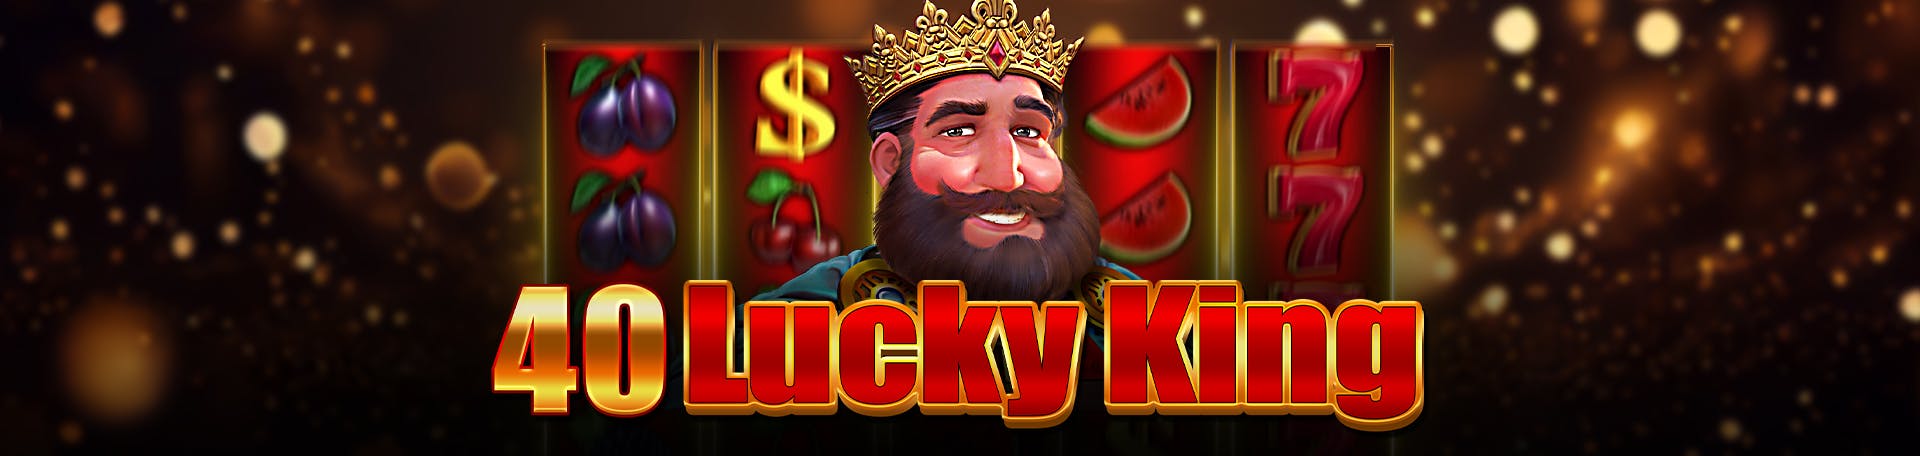 Lucky King slot